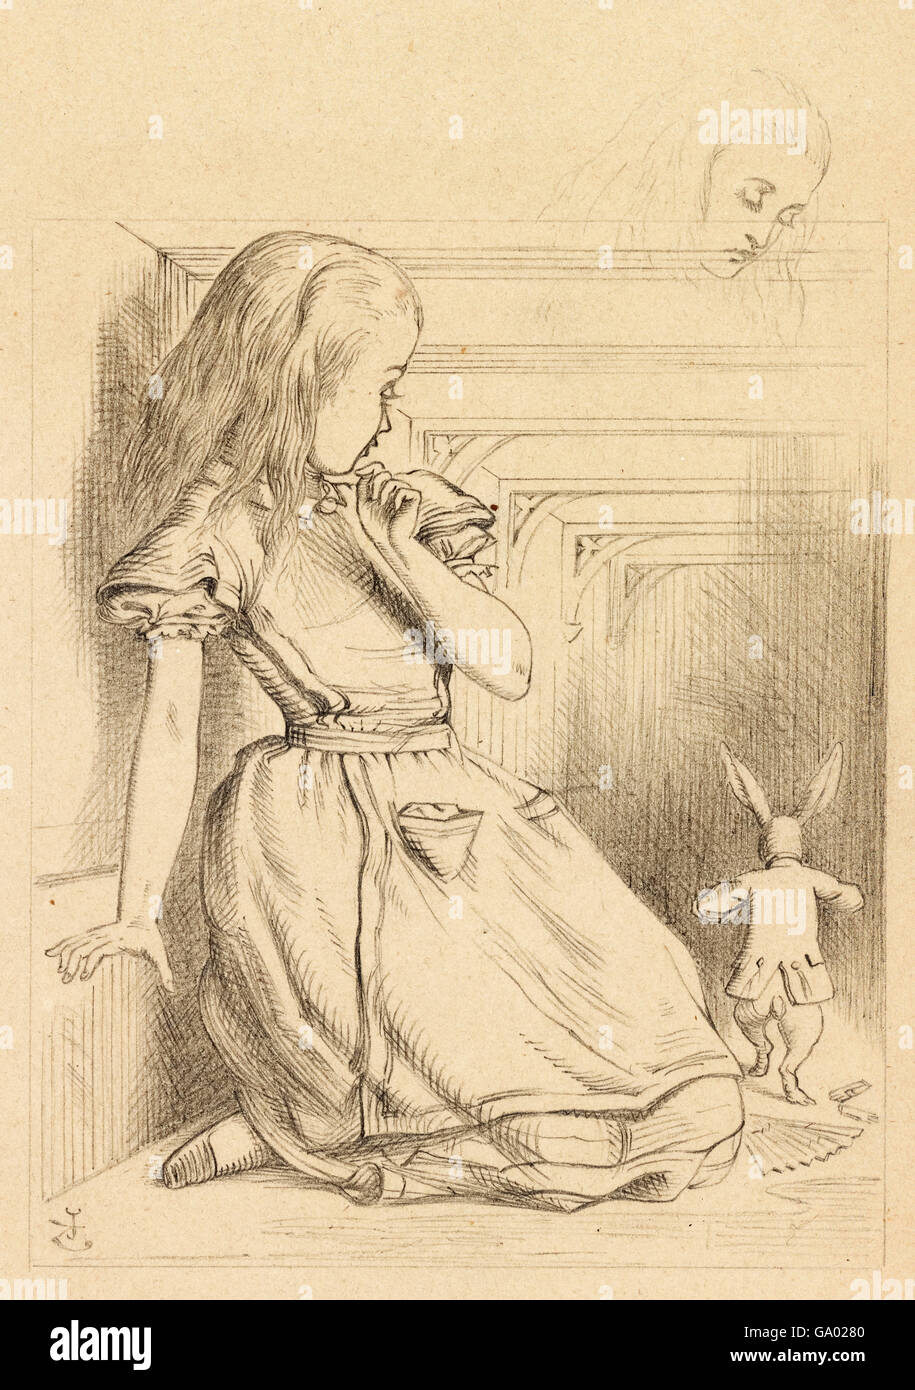 Alice im Wunderland. 'The Rabbit Scurried', eine Illustration von Sir John Tenniel für Lewis Carrolls 'Alice im Wunderland', die Alice und den Weißen Hasen zeigt. Bleistiftzeichnung auf Papier, c,1866. Stockfoto